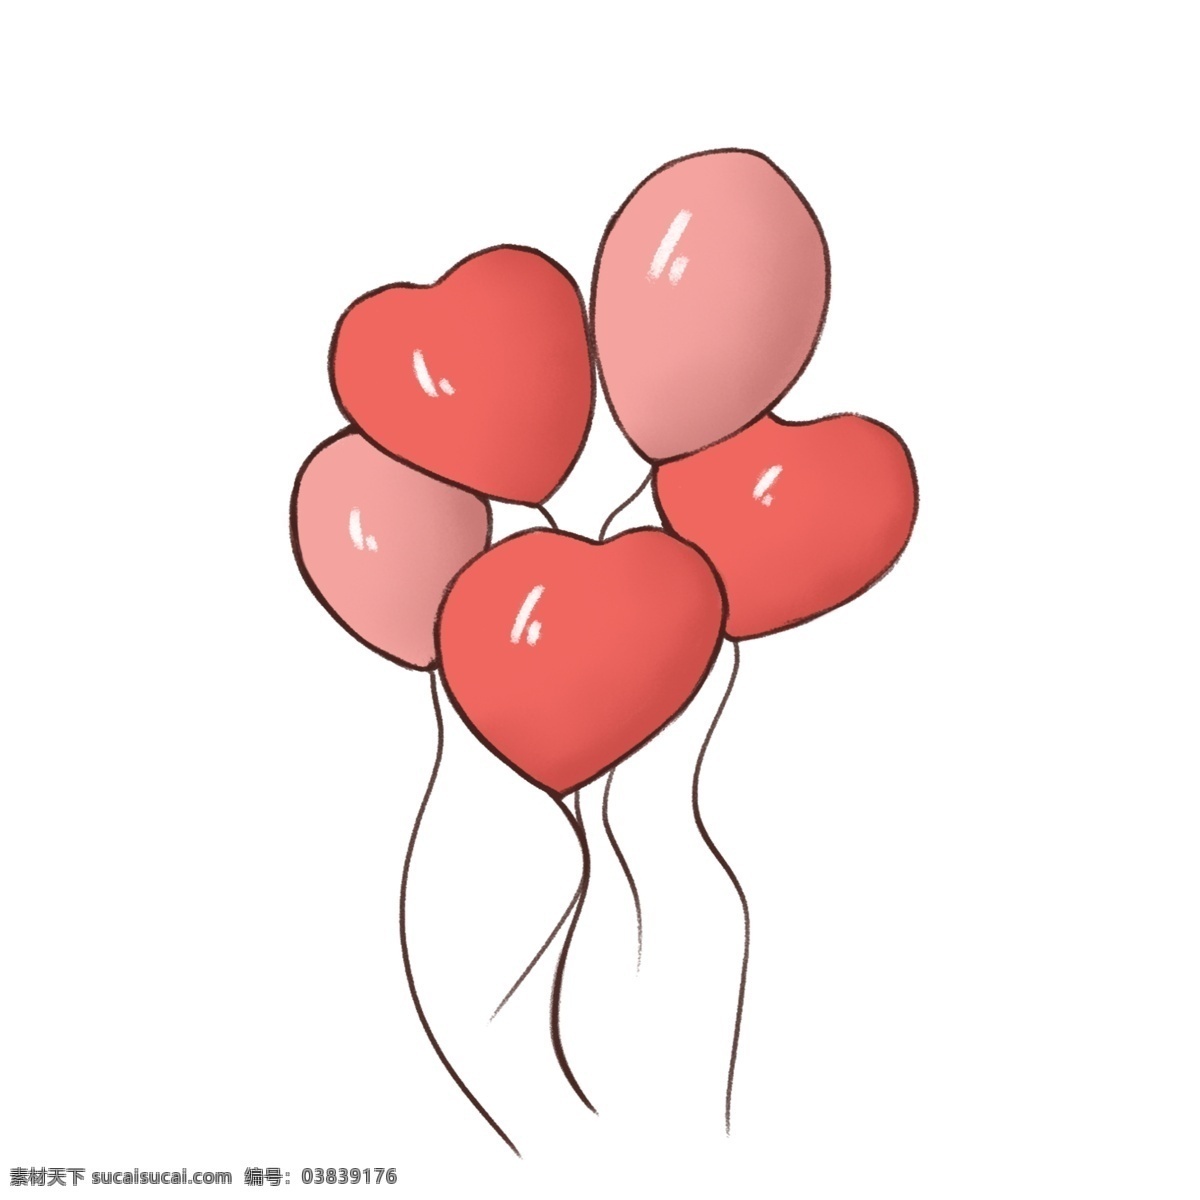 手绘 情人节 心形 气球 情人节气球 手绘心形气球 红色气球 情人节装饰 漂浮的气球 浪漫节日气球